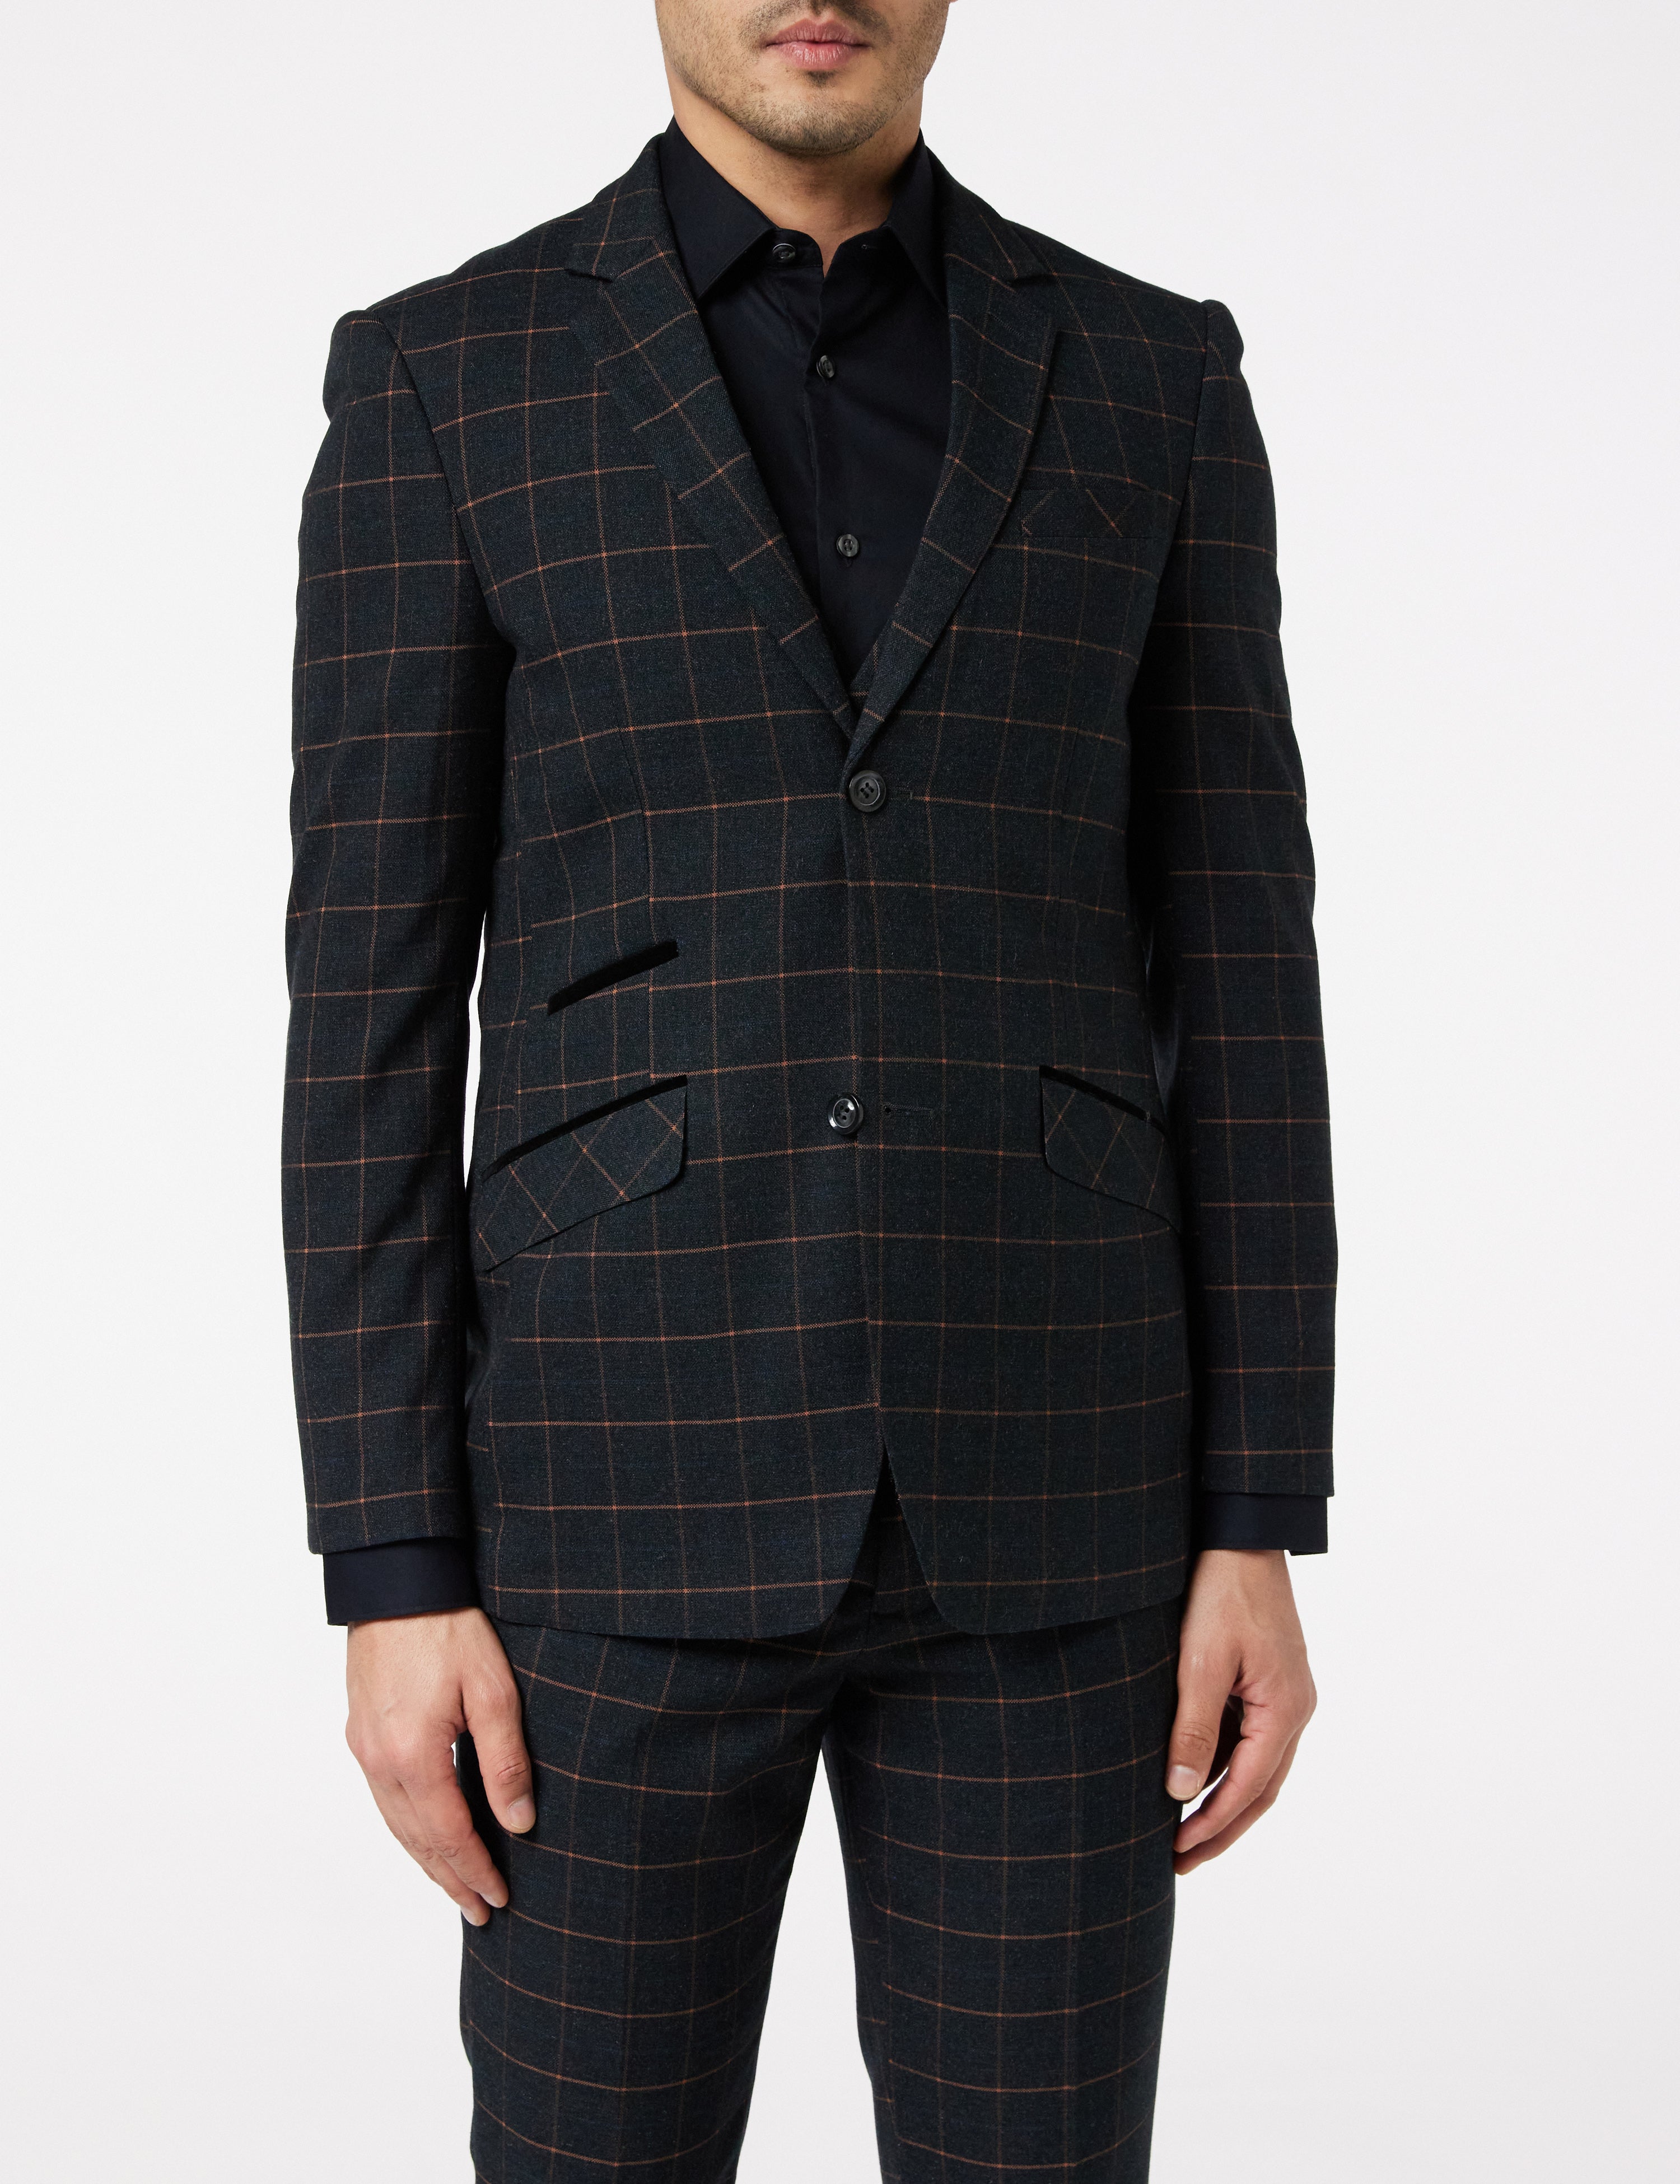 Manzini Mens Plaid Suit Fancy Vest Jet Black Checker 3 Pc. Oxford